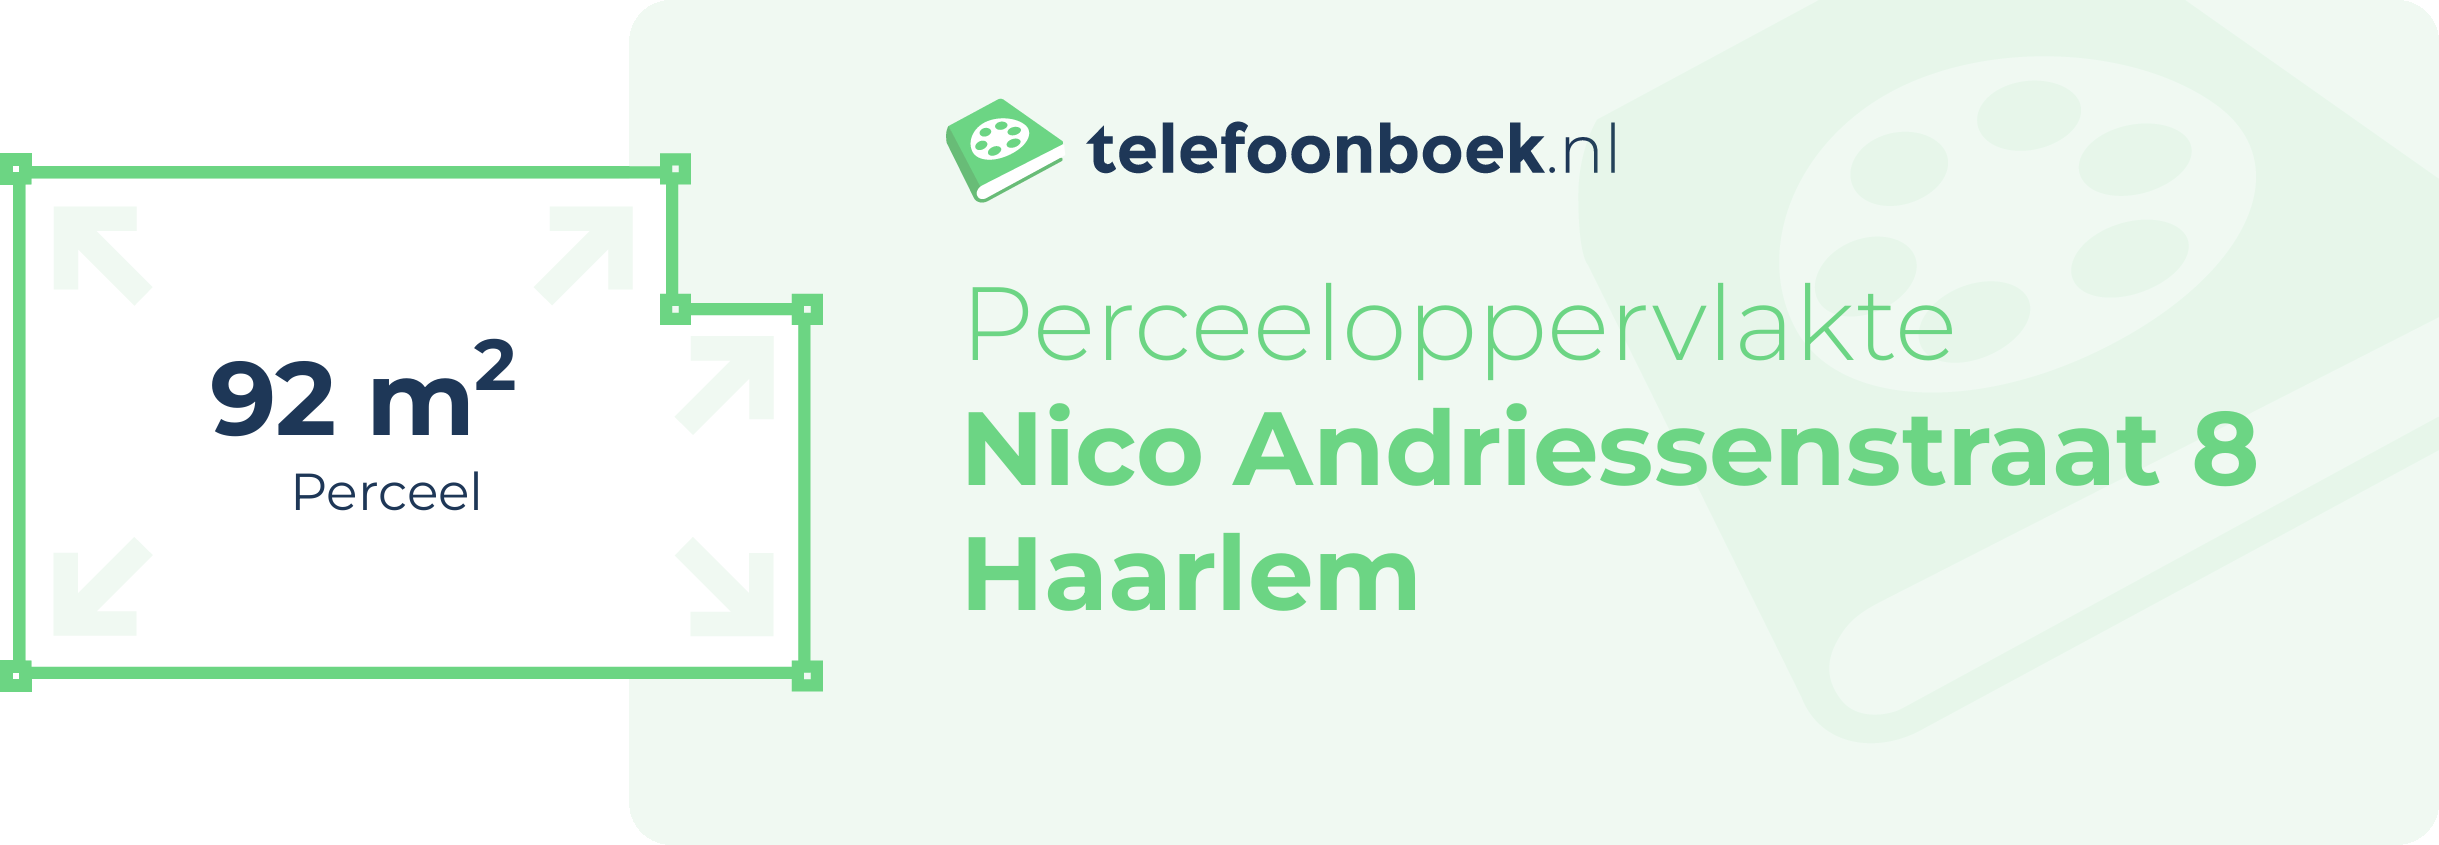 Perceeloppervlakte Nico Andriessenstraat 8 Haarlem